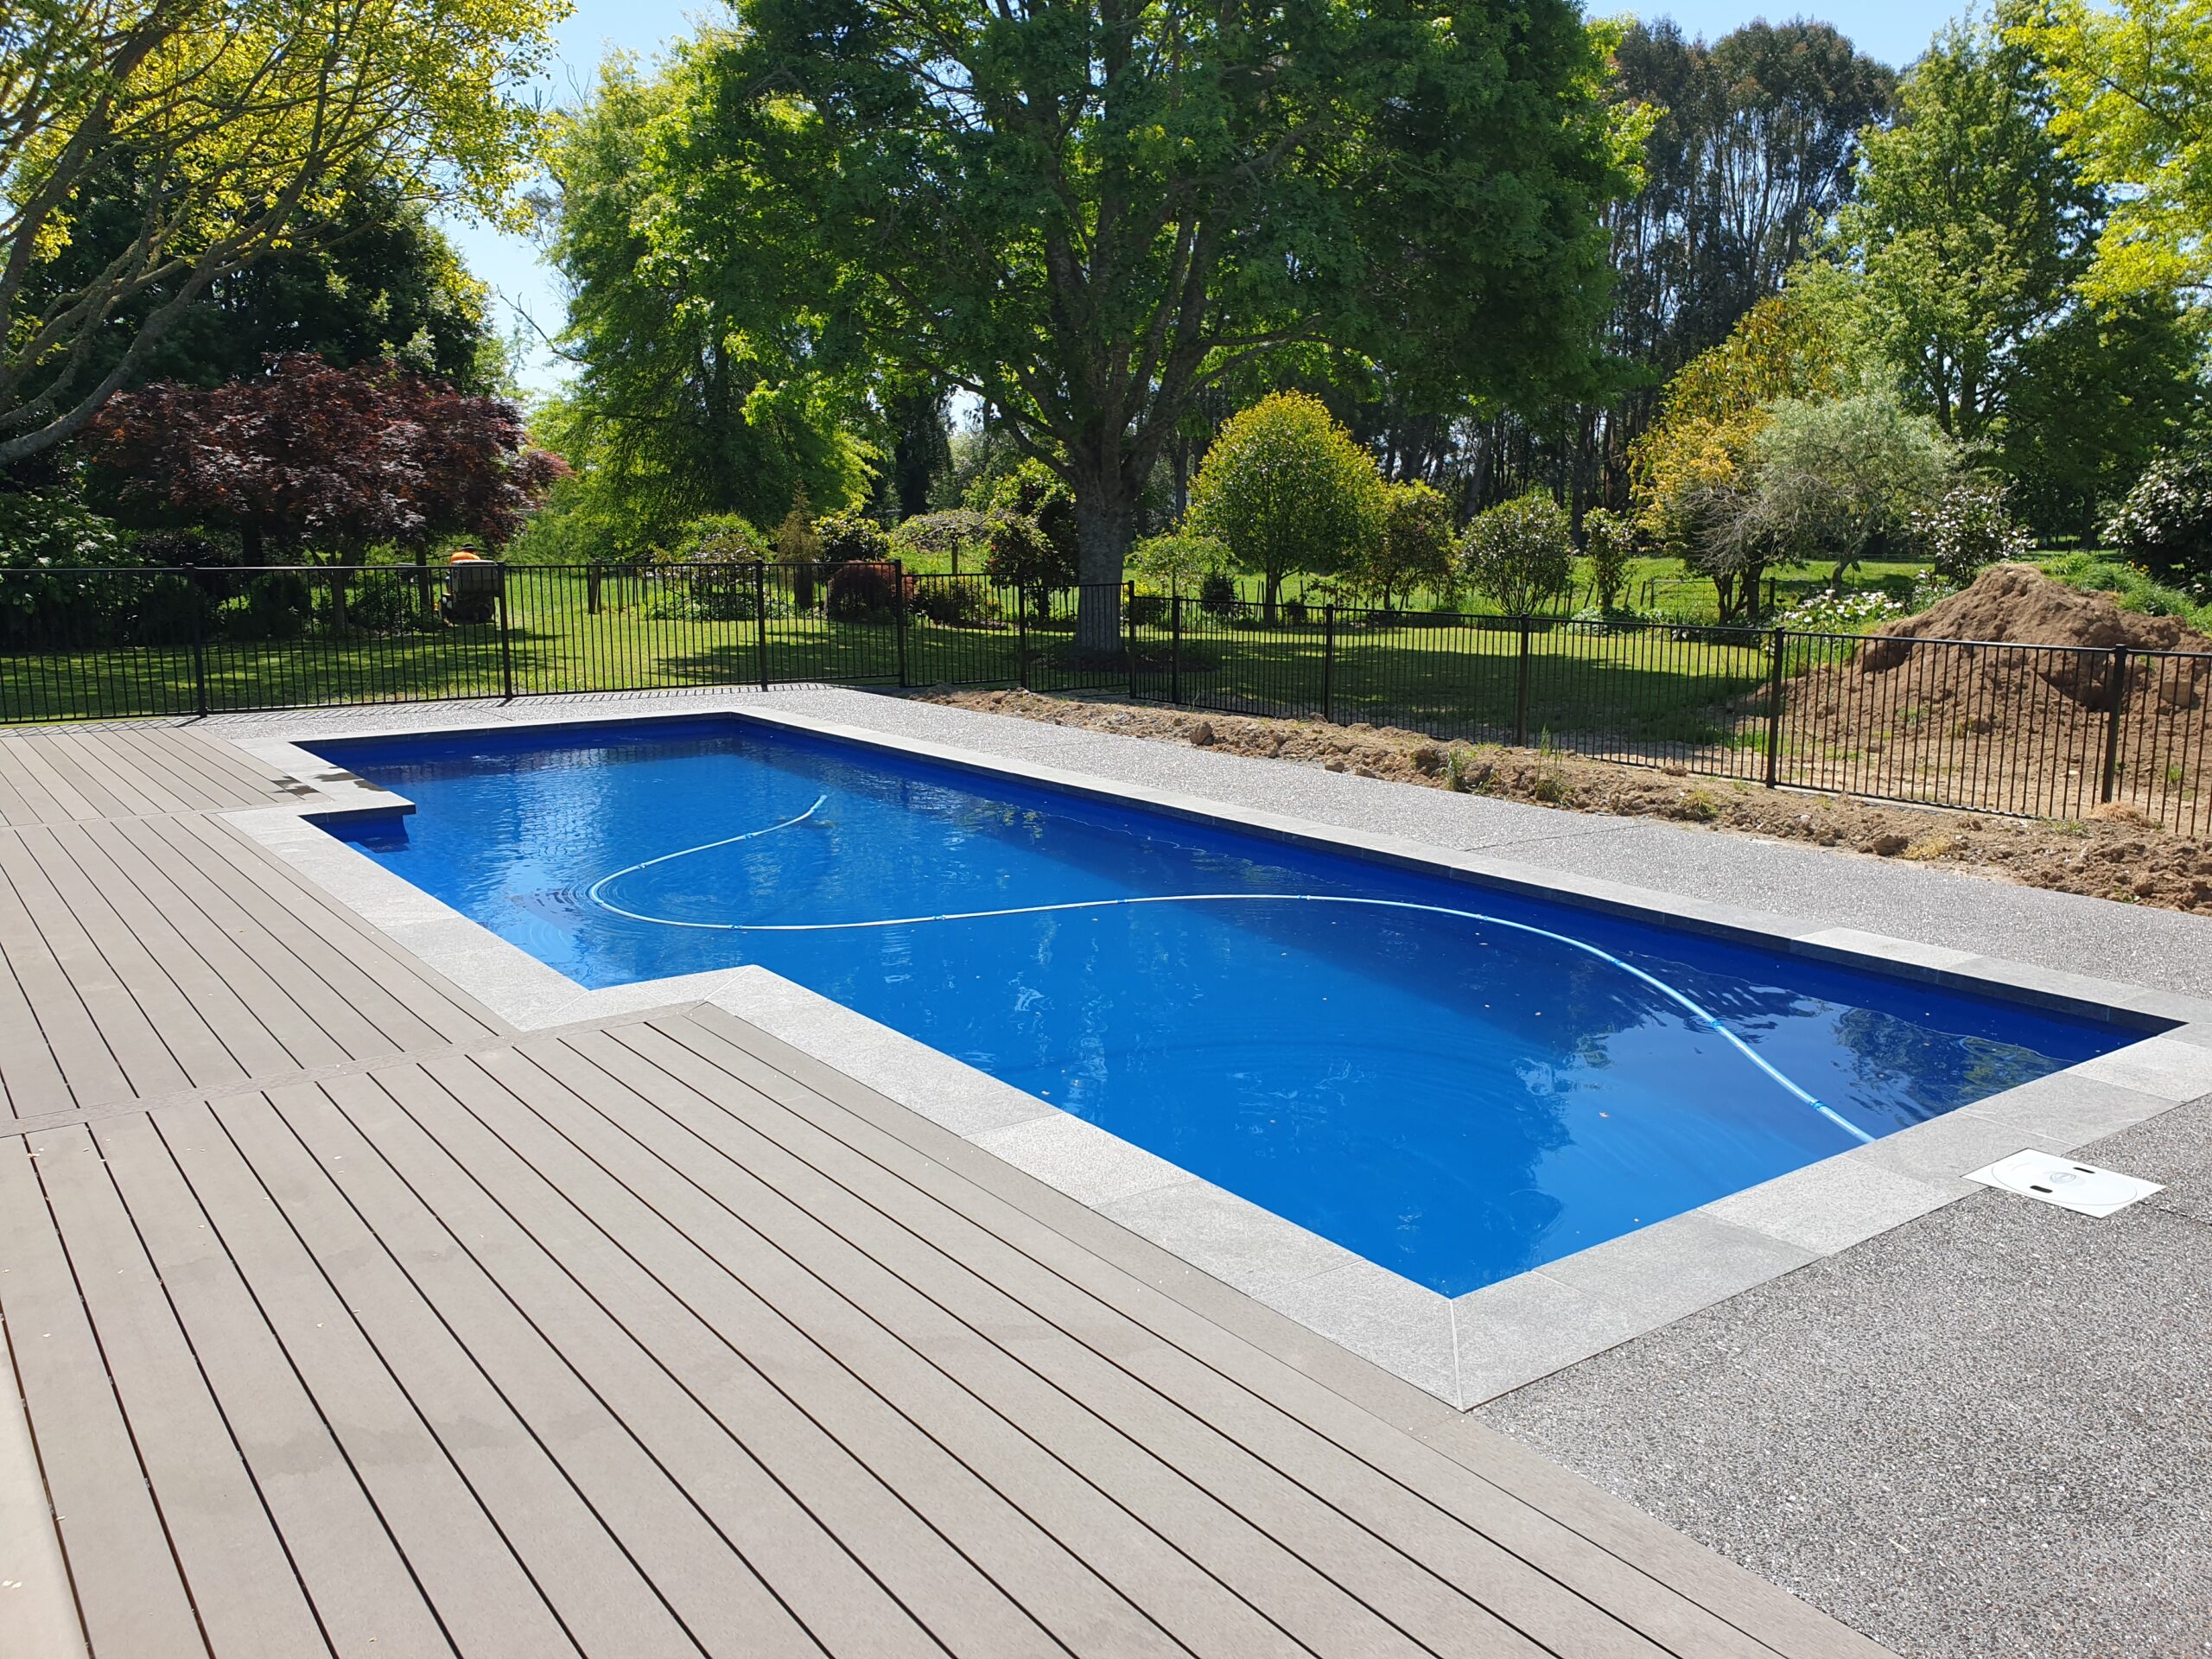 10 meter inground fibreglass swimming pool